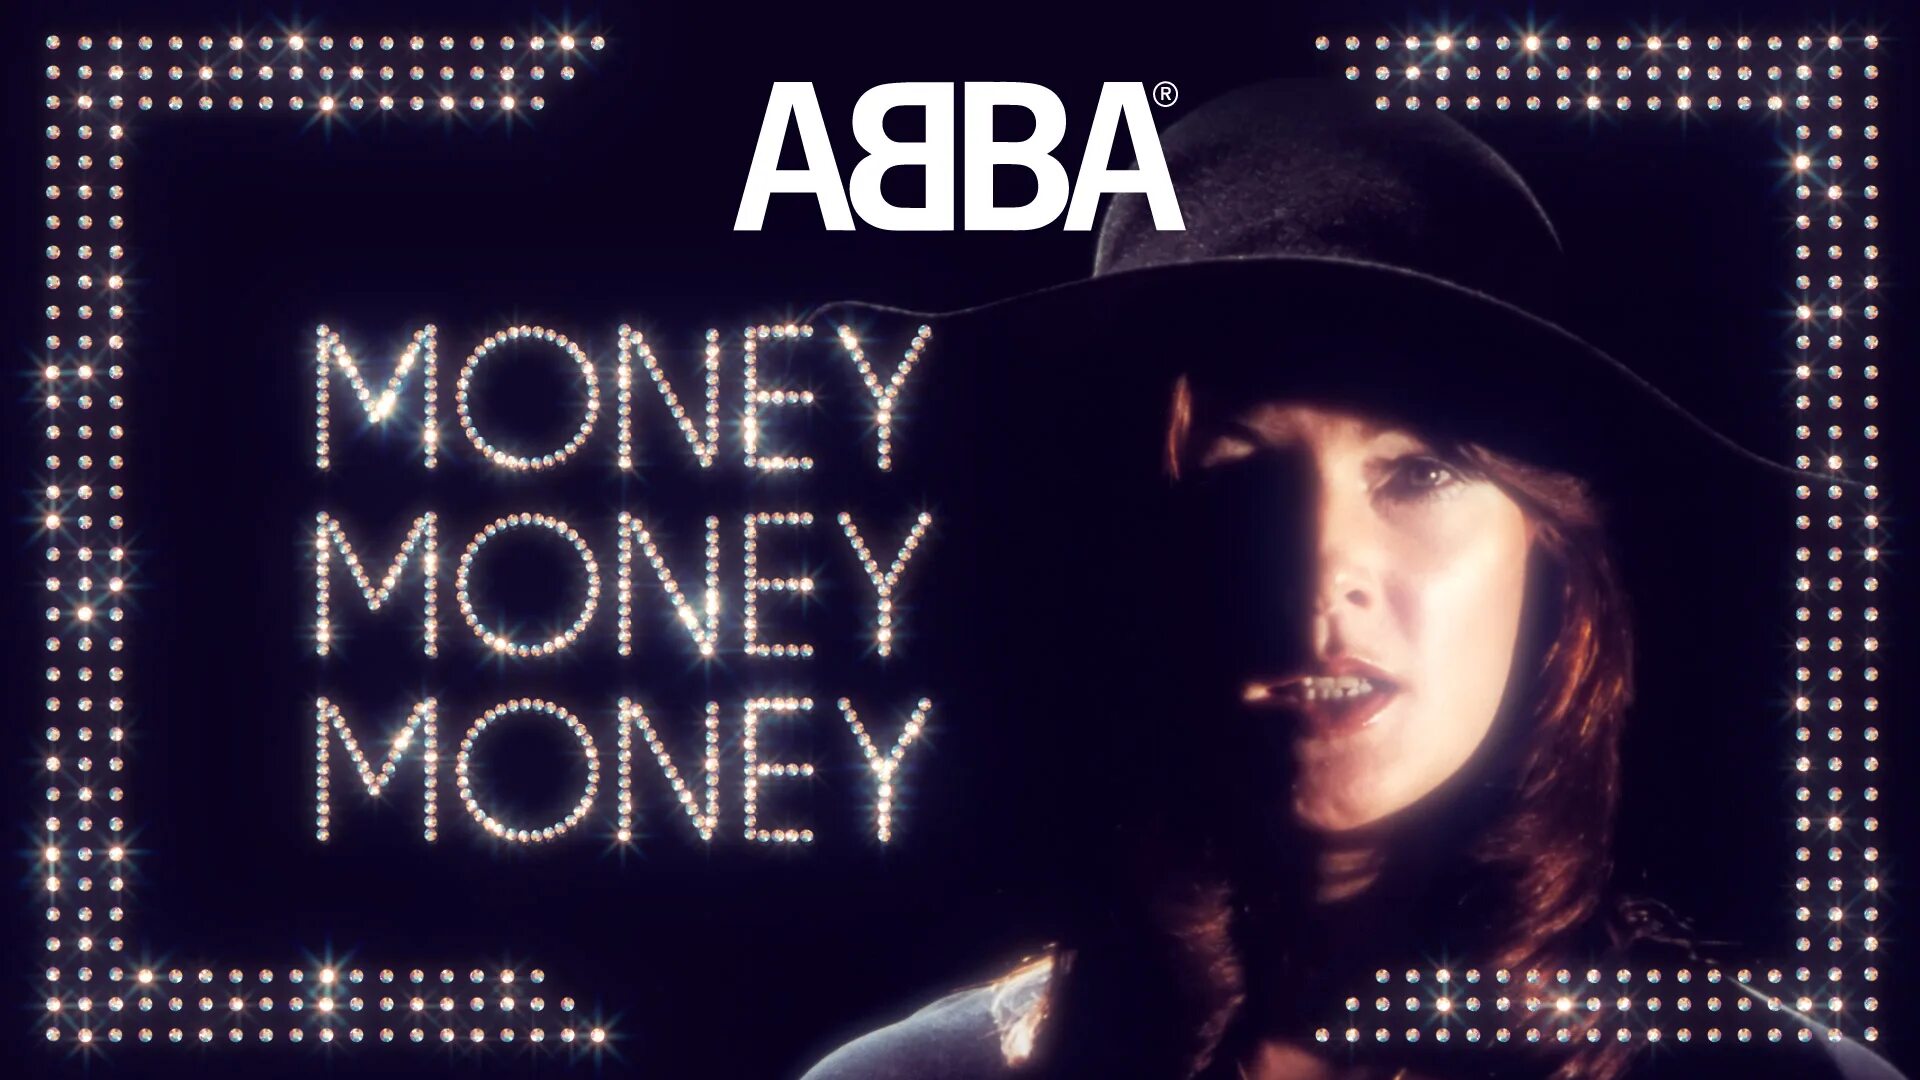 Видео песни мани мани. Абба money money money. ABBA-money, money, money- фото. Мани-мани песня абба. ABBA - money, money, money (1976).